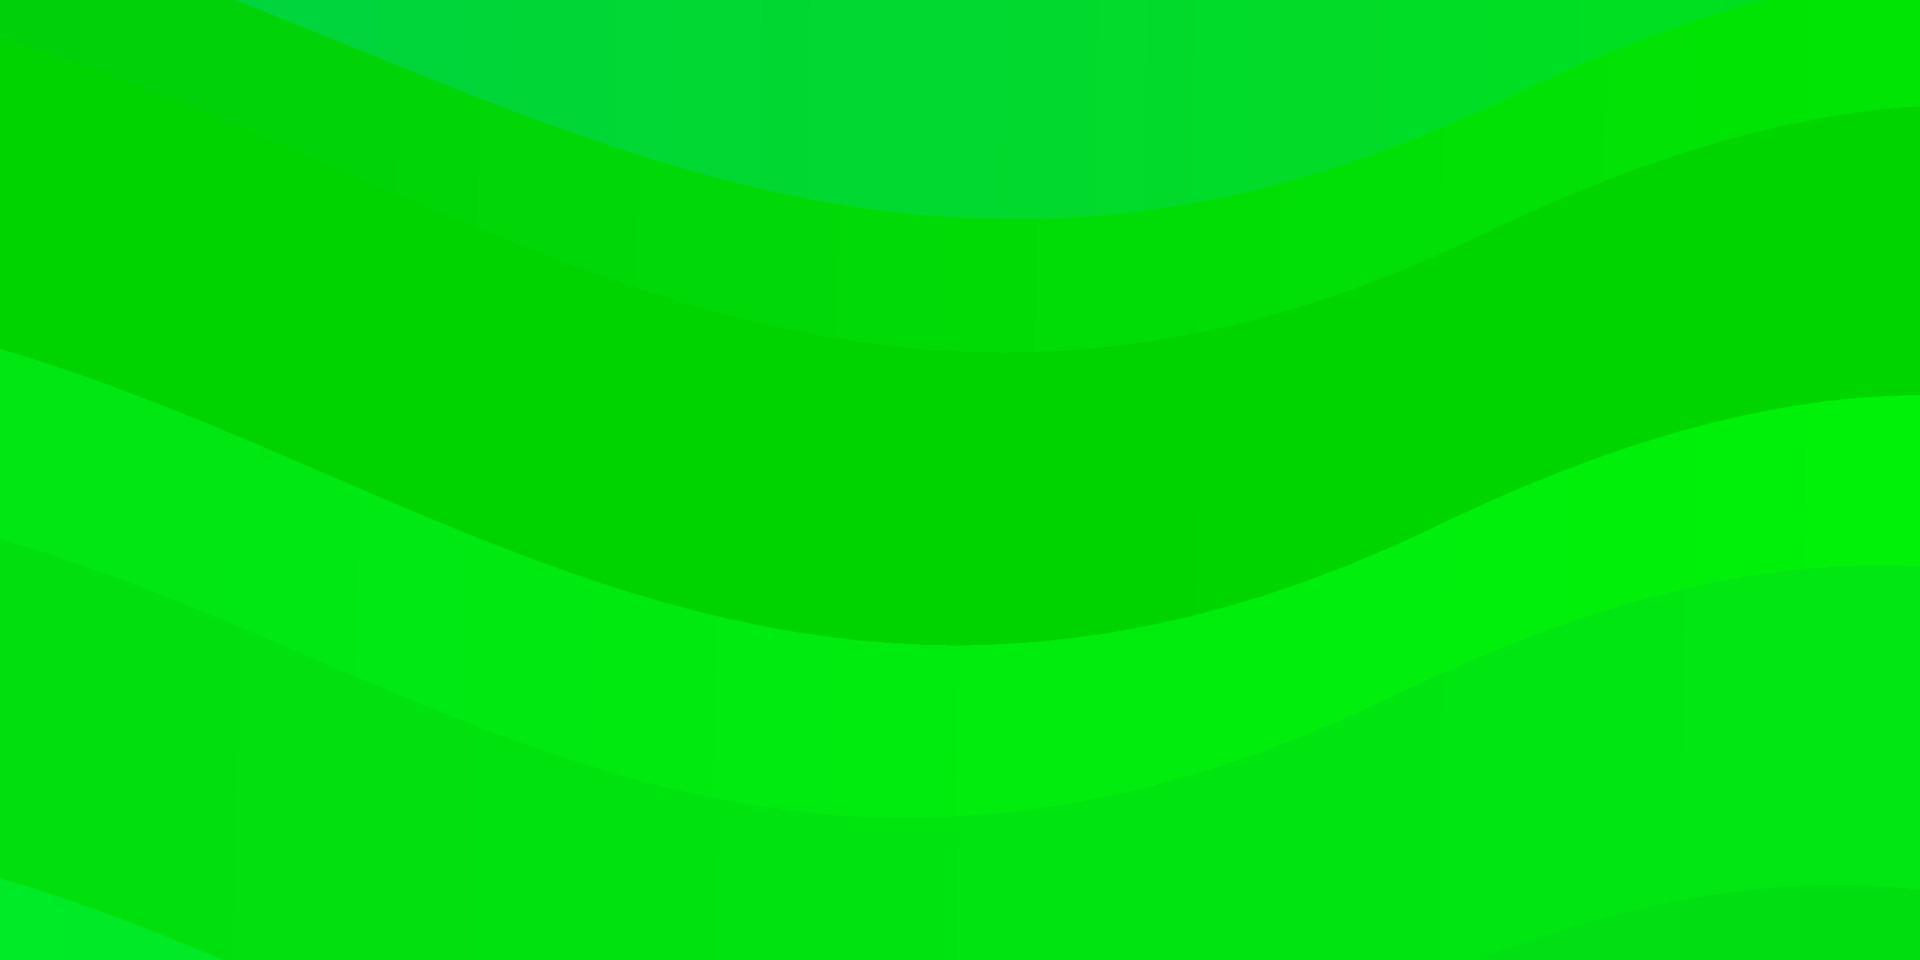 trama vettoriale verde chiaro, giallo con curve.